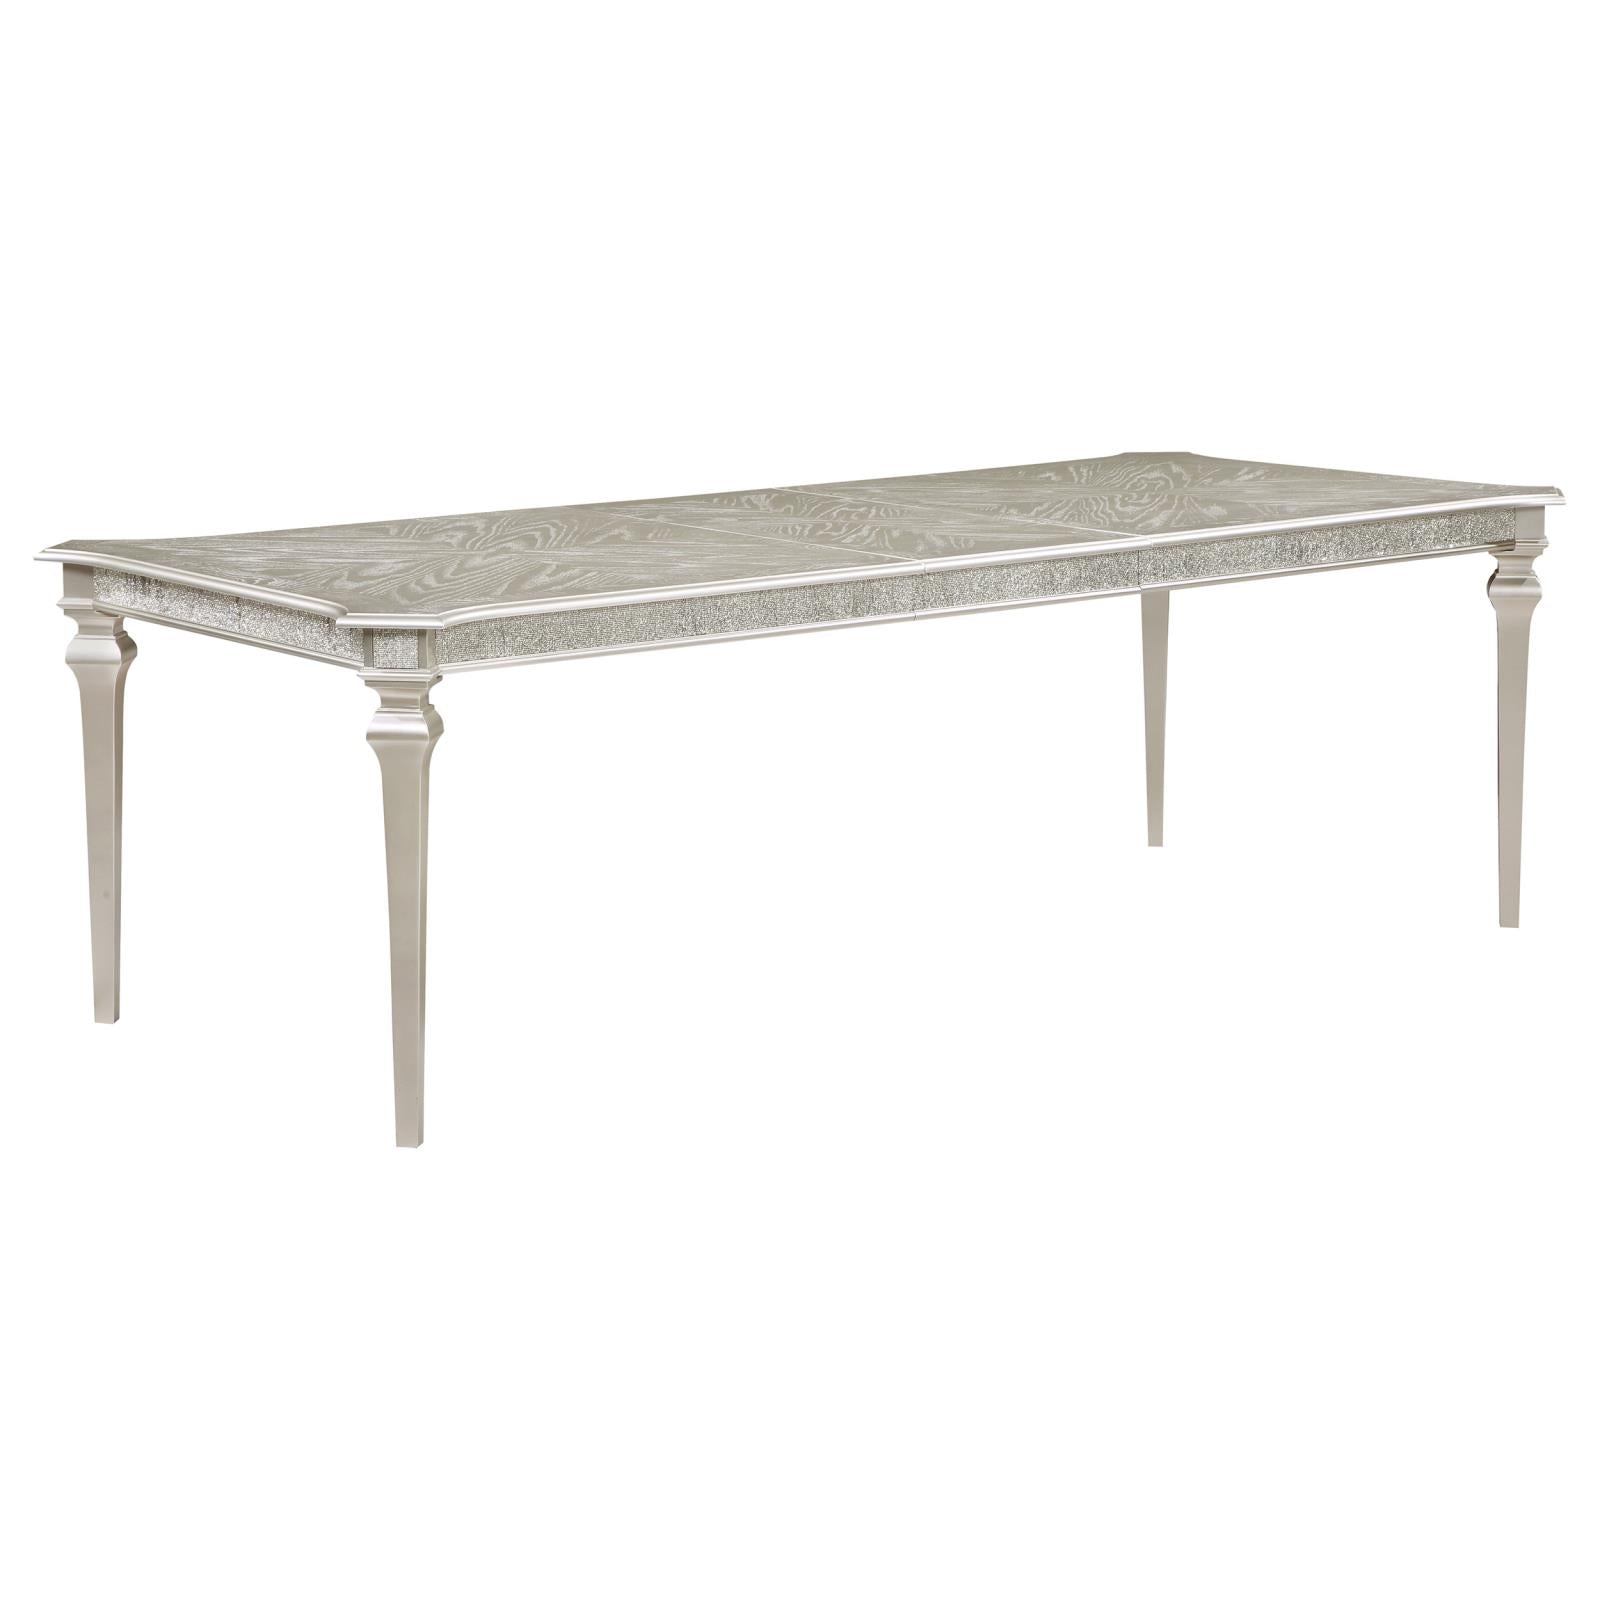 Evangeline Evangeline Rectangular Dining Table With Extension Leaf Silver Oak 107551